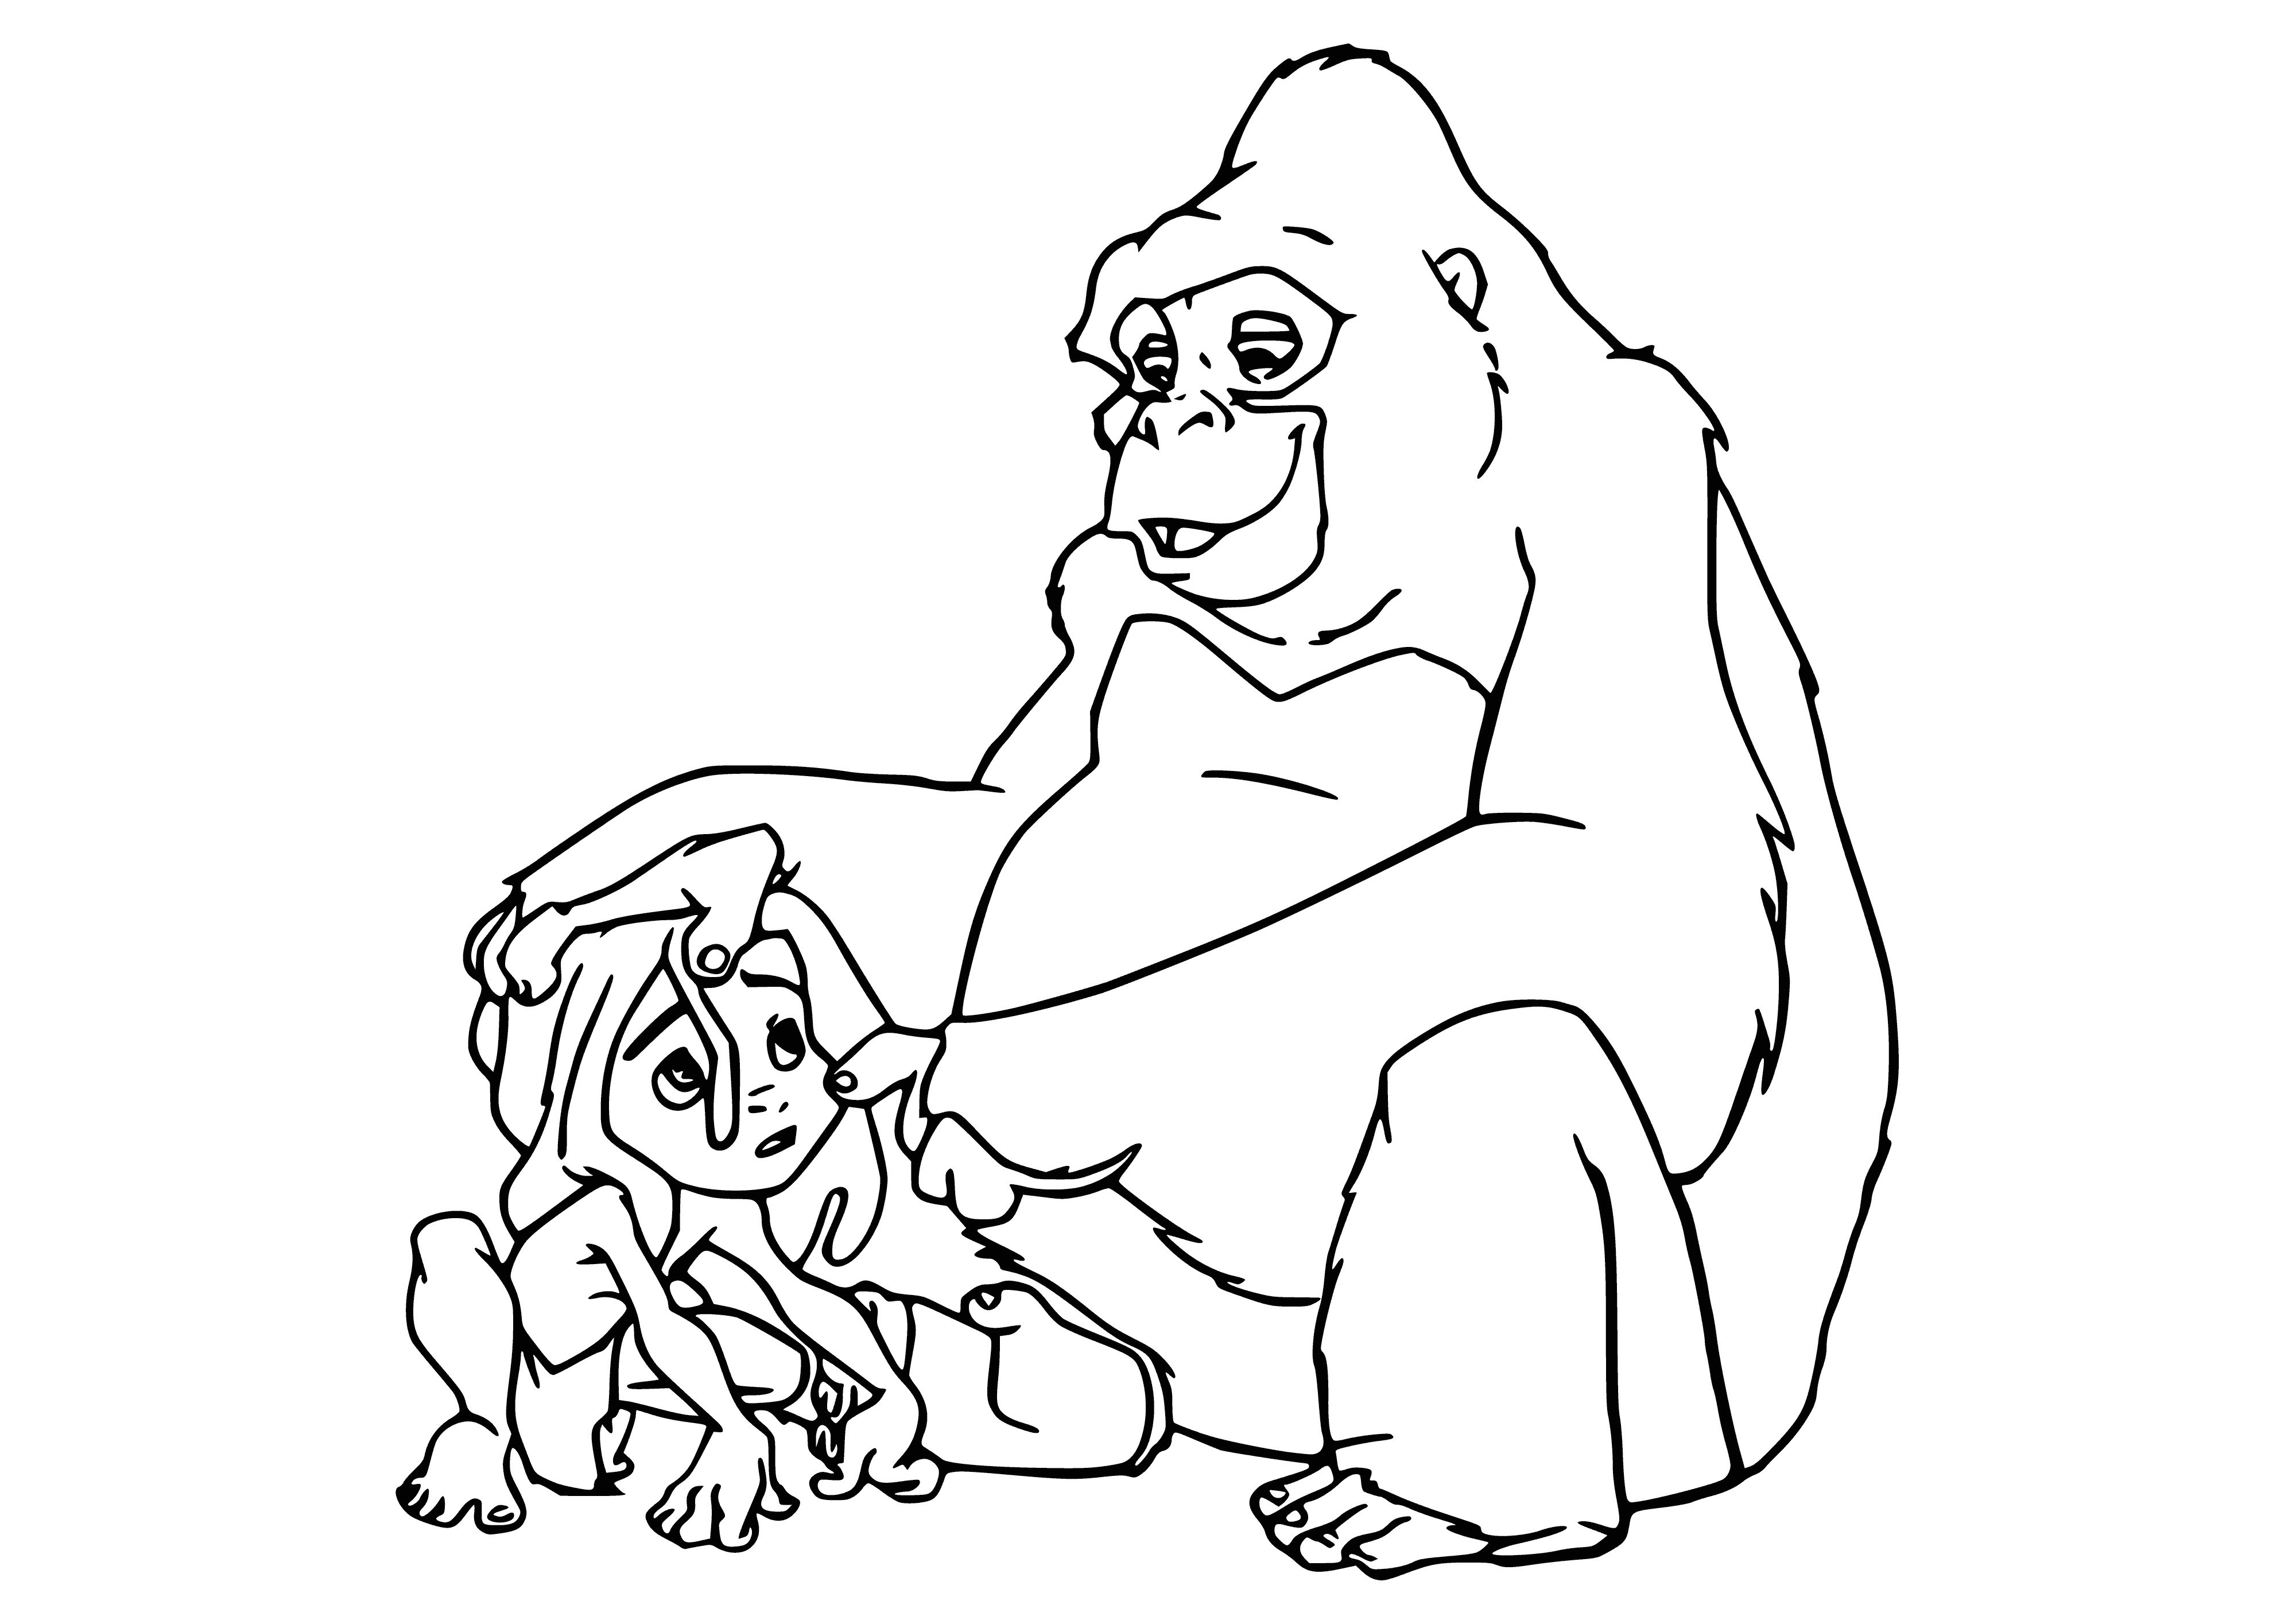 Tarzan and Cala coloring page